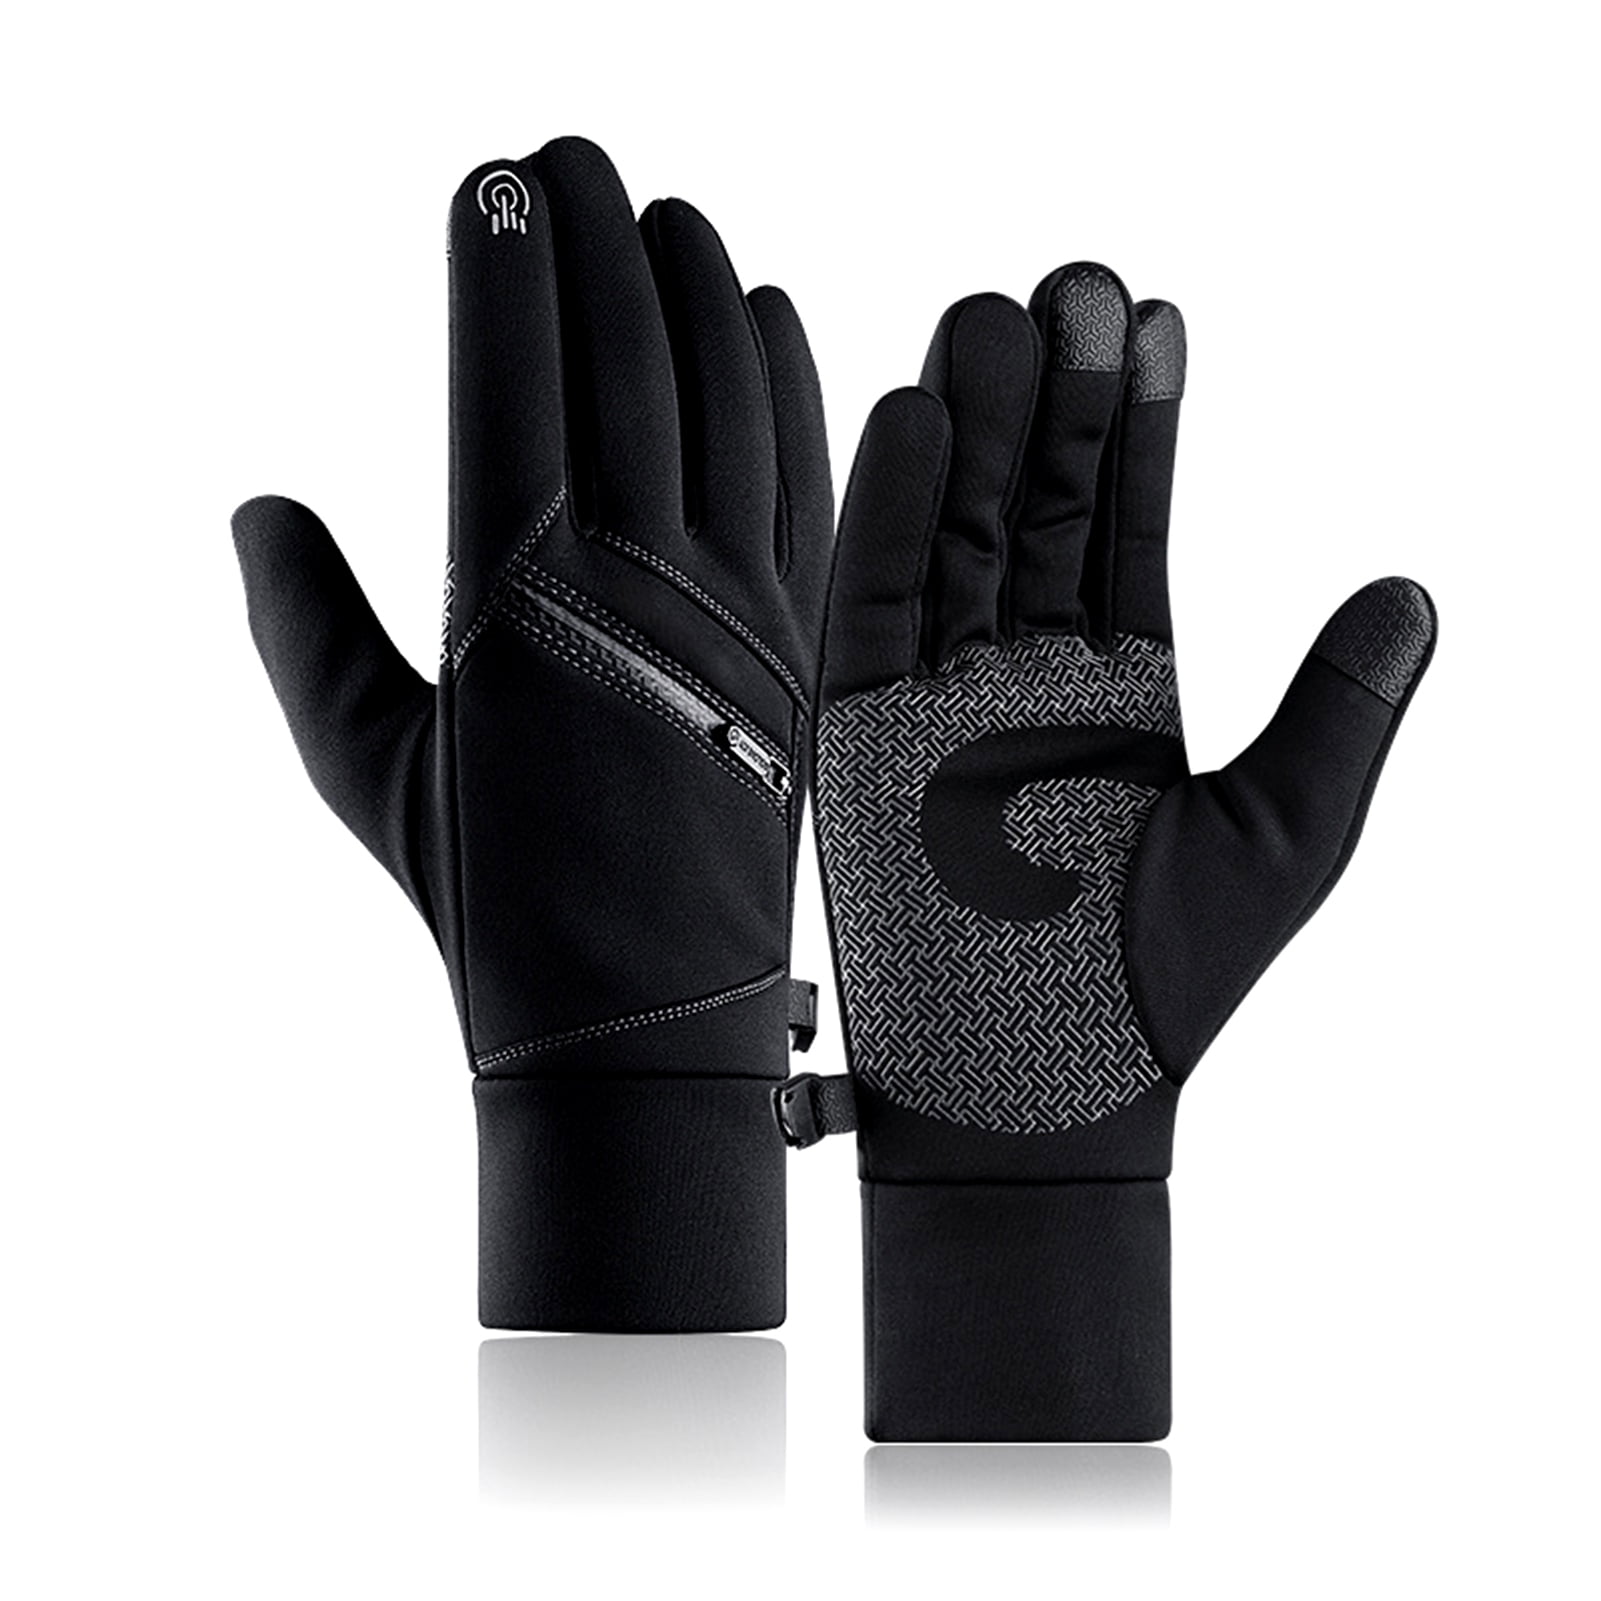 Craft Sportswear Storm Wind/Waterproof Bike Cycling Fleece Lined Glove Large